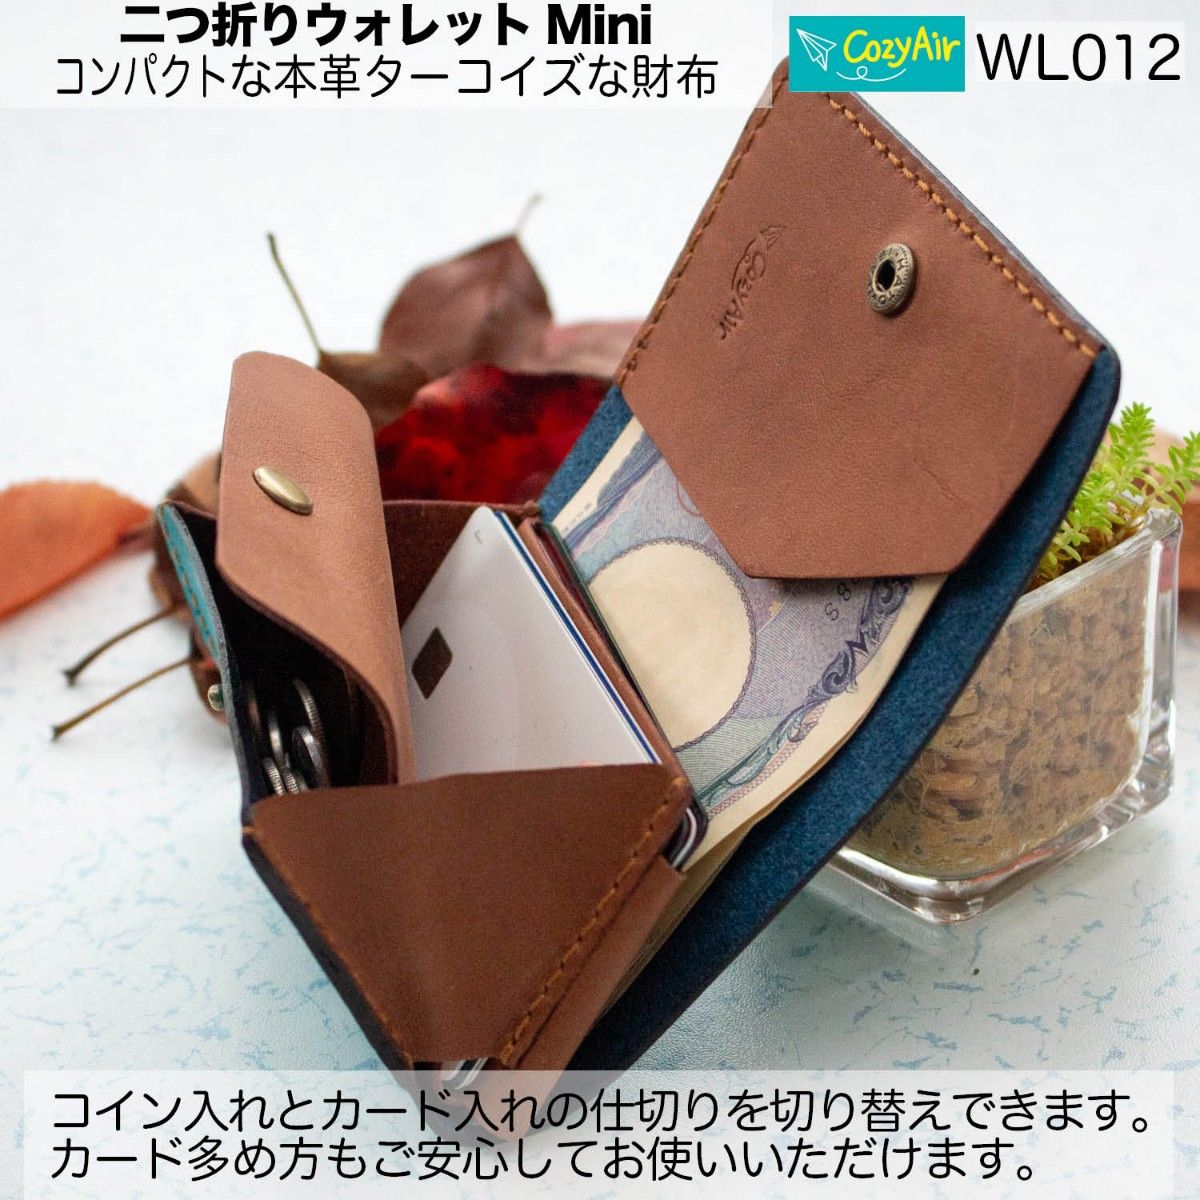 WL012 コンパクトな二つ折りウォレットMini  本革ターコイズな財布